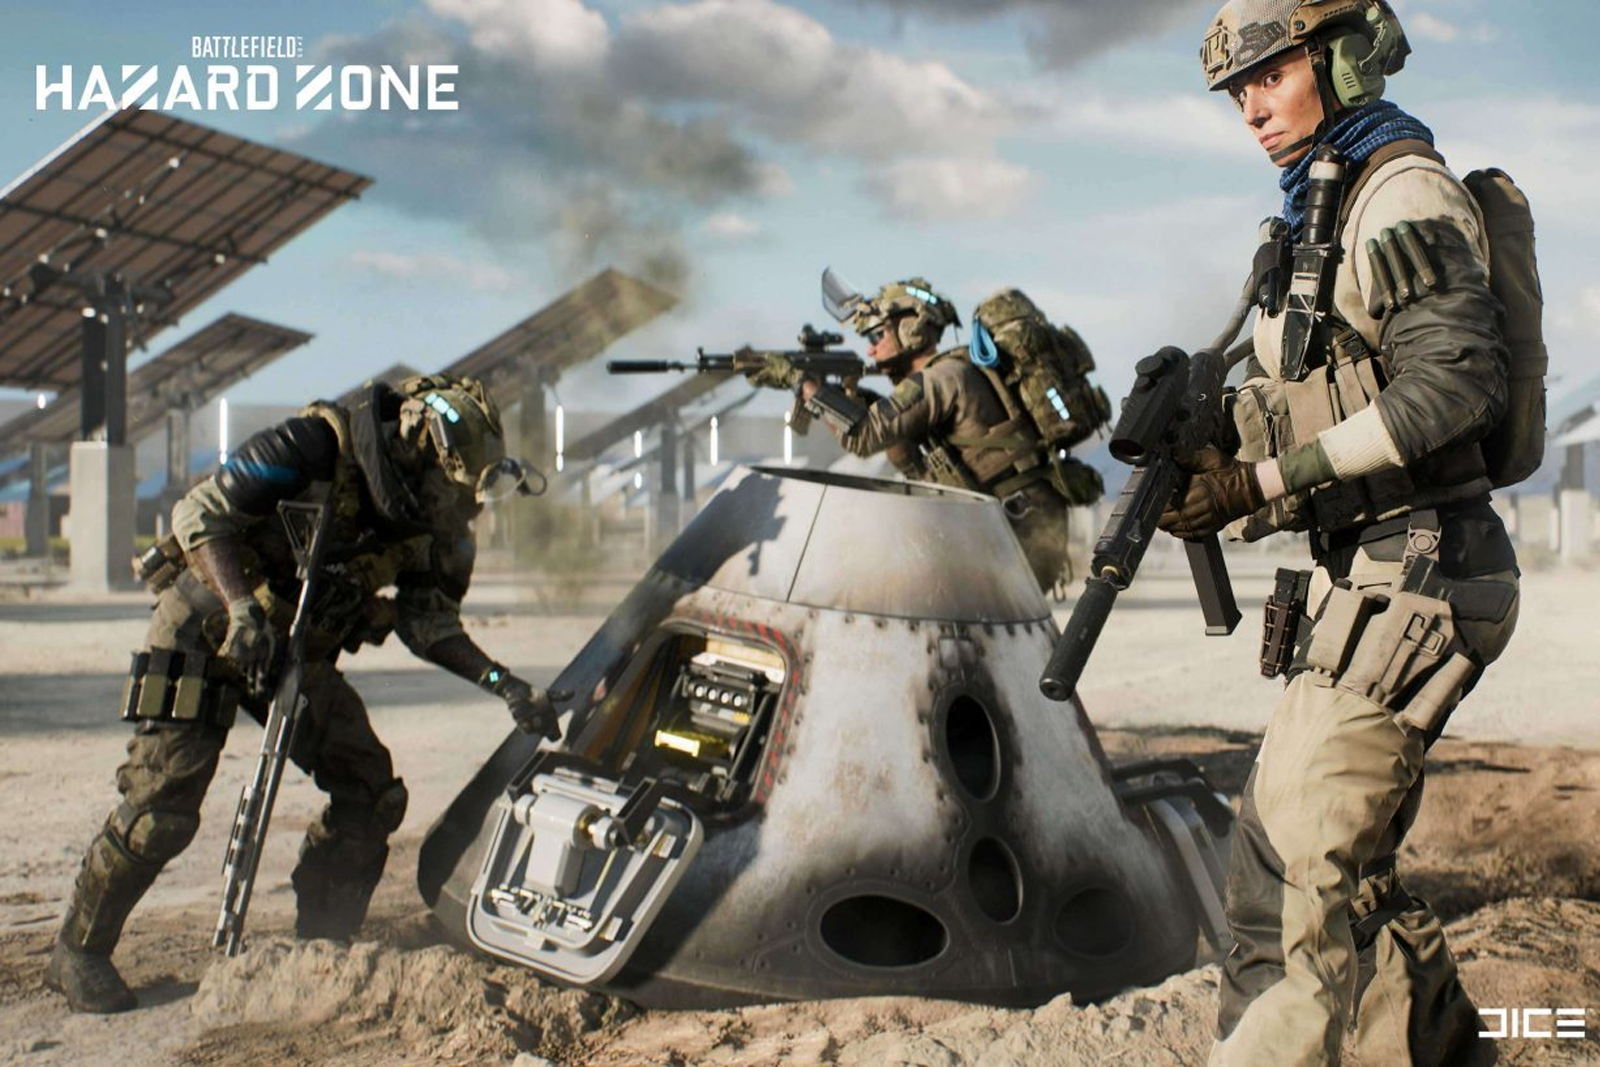 EA DICE está construindo uma nova equipe para apoiar o próximo Battlefield